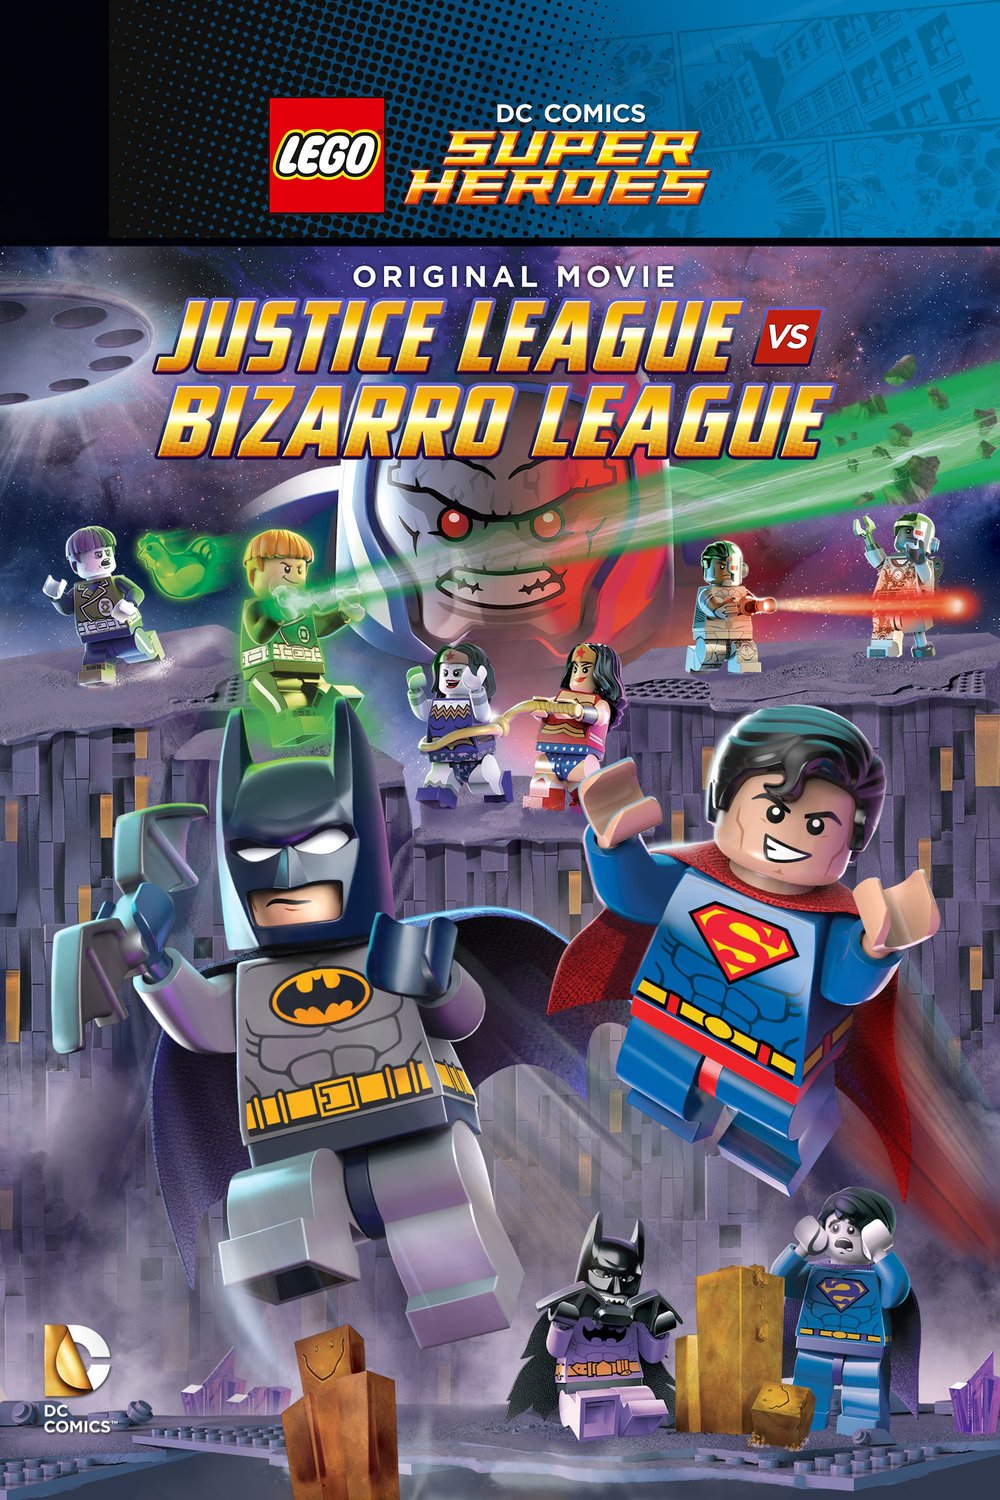 HQ Lego DC Comics Super Heroes: Justice League Vs. Bizarro Leag Wallpapers | File 358.08Kb